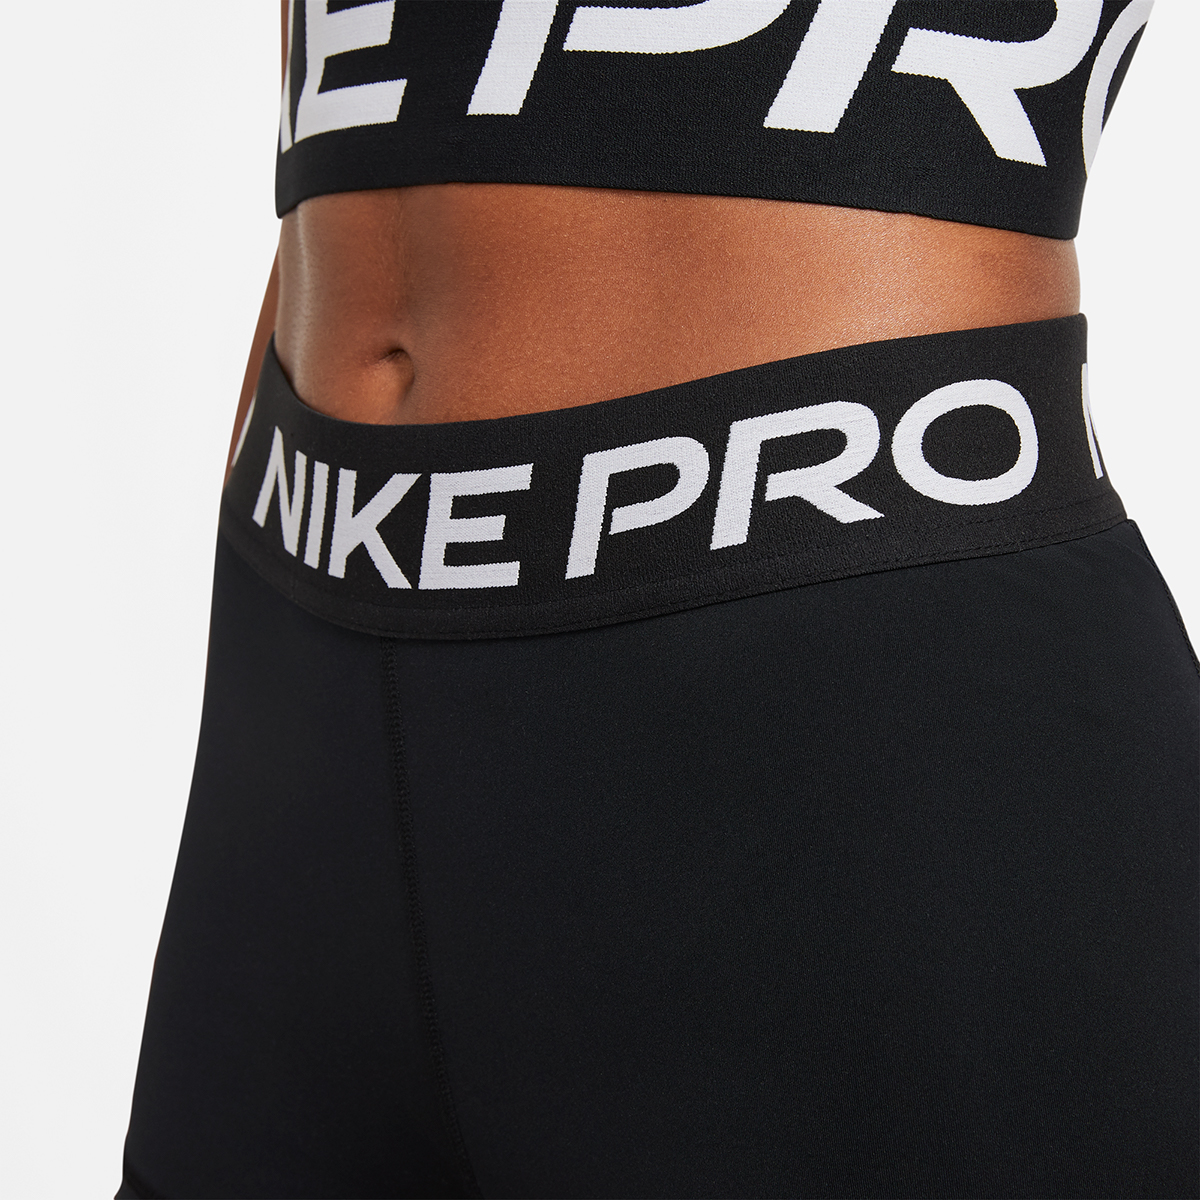 Nike Pro 3" Short, , large image number null